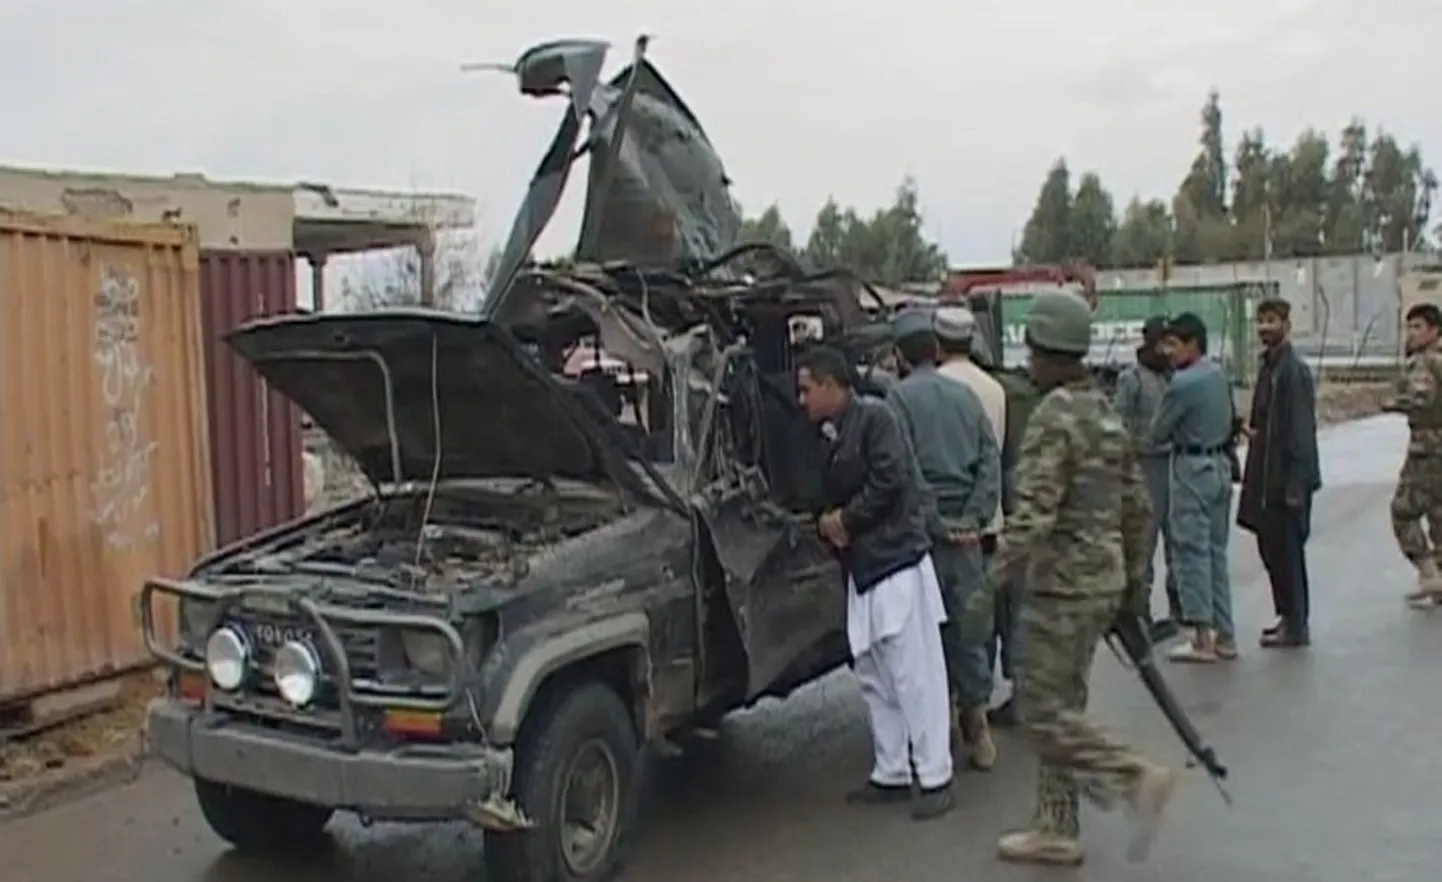 Kandahari provintsi asekubernerile kuulunud auto.